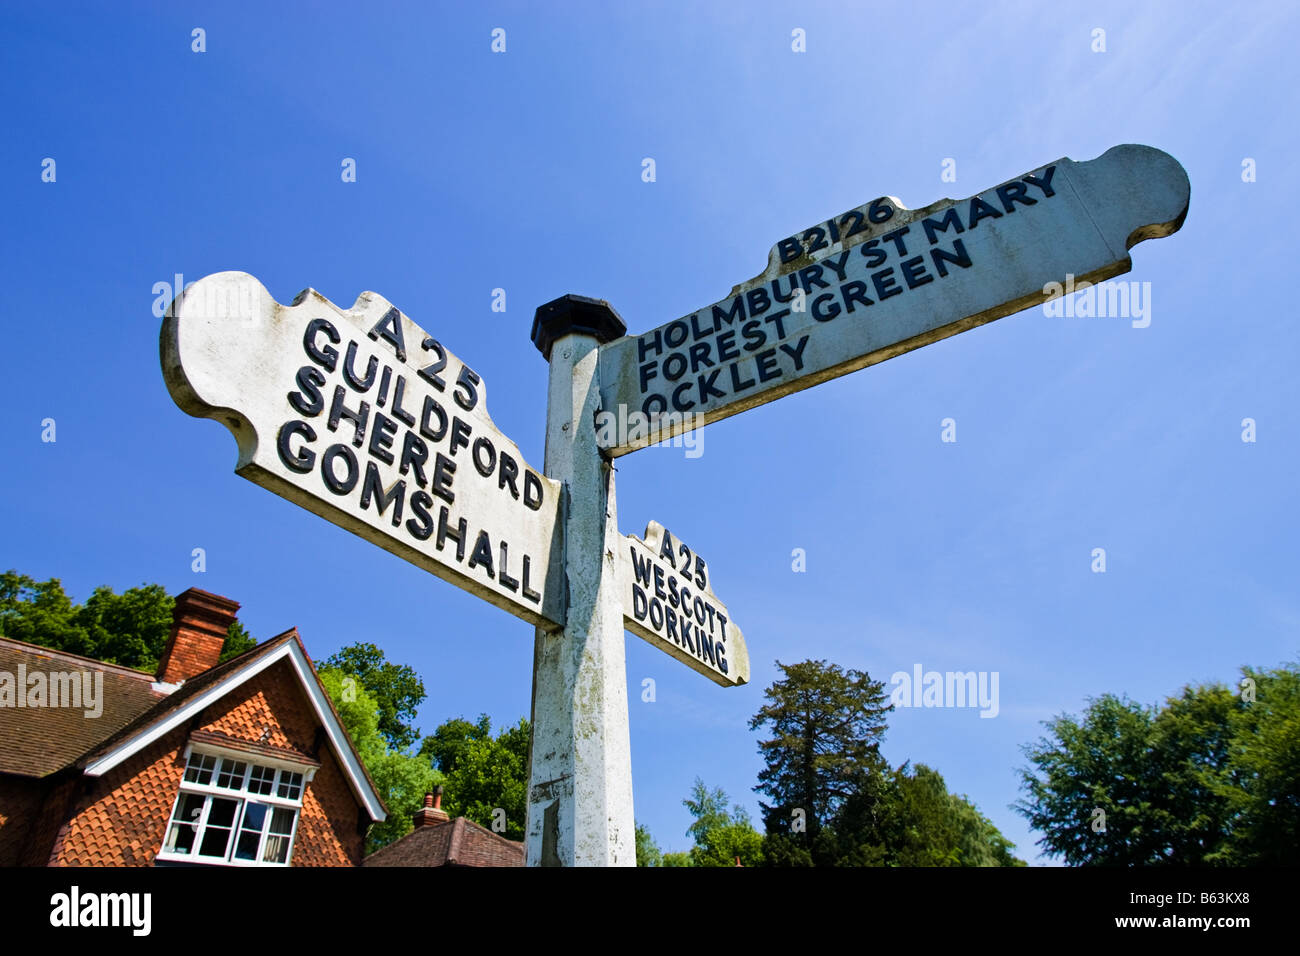 Signpost dando indicaciones a las aldeas locales en Abinger Hammer, Surrey, Inglaterra, Reino Unido. Foto de stock